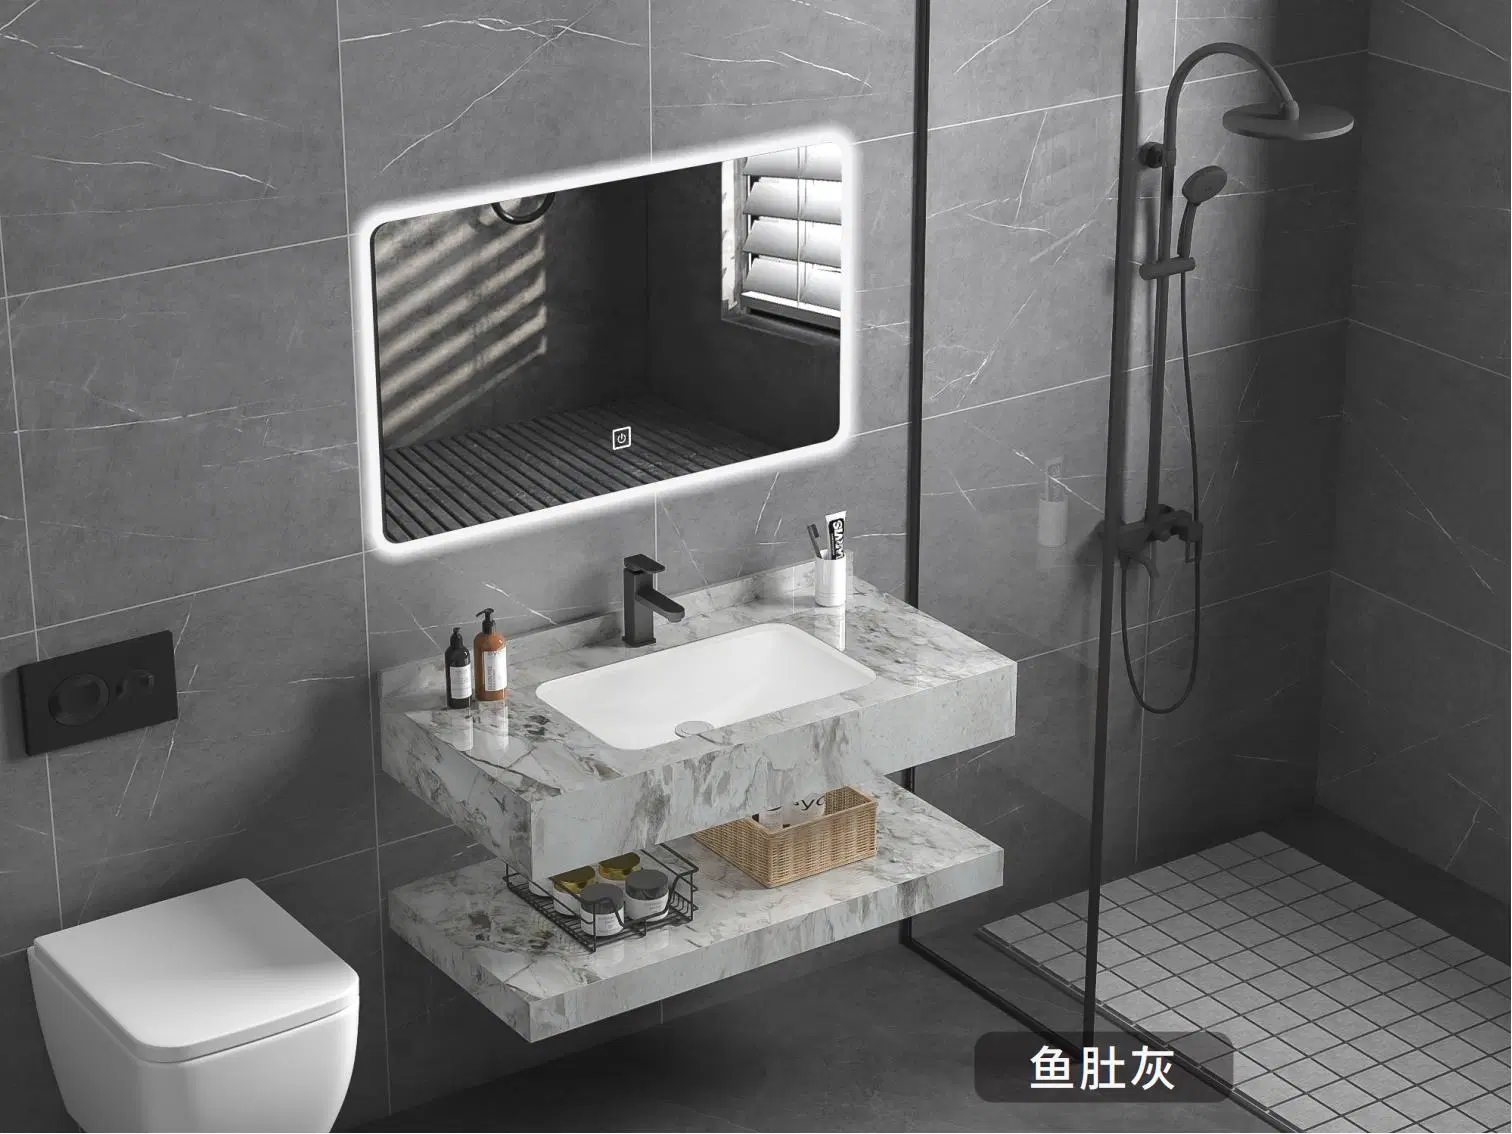 مرآة مضيئة لأثاث الحمام مع خزانة وحوض صخري